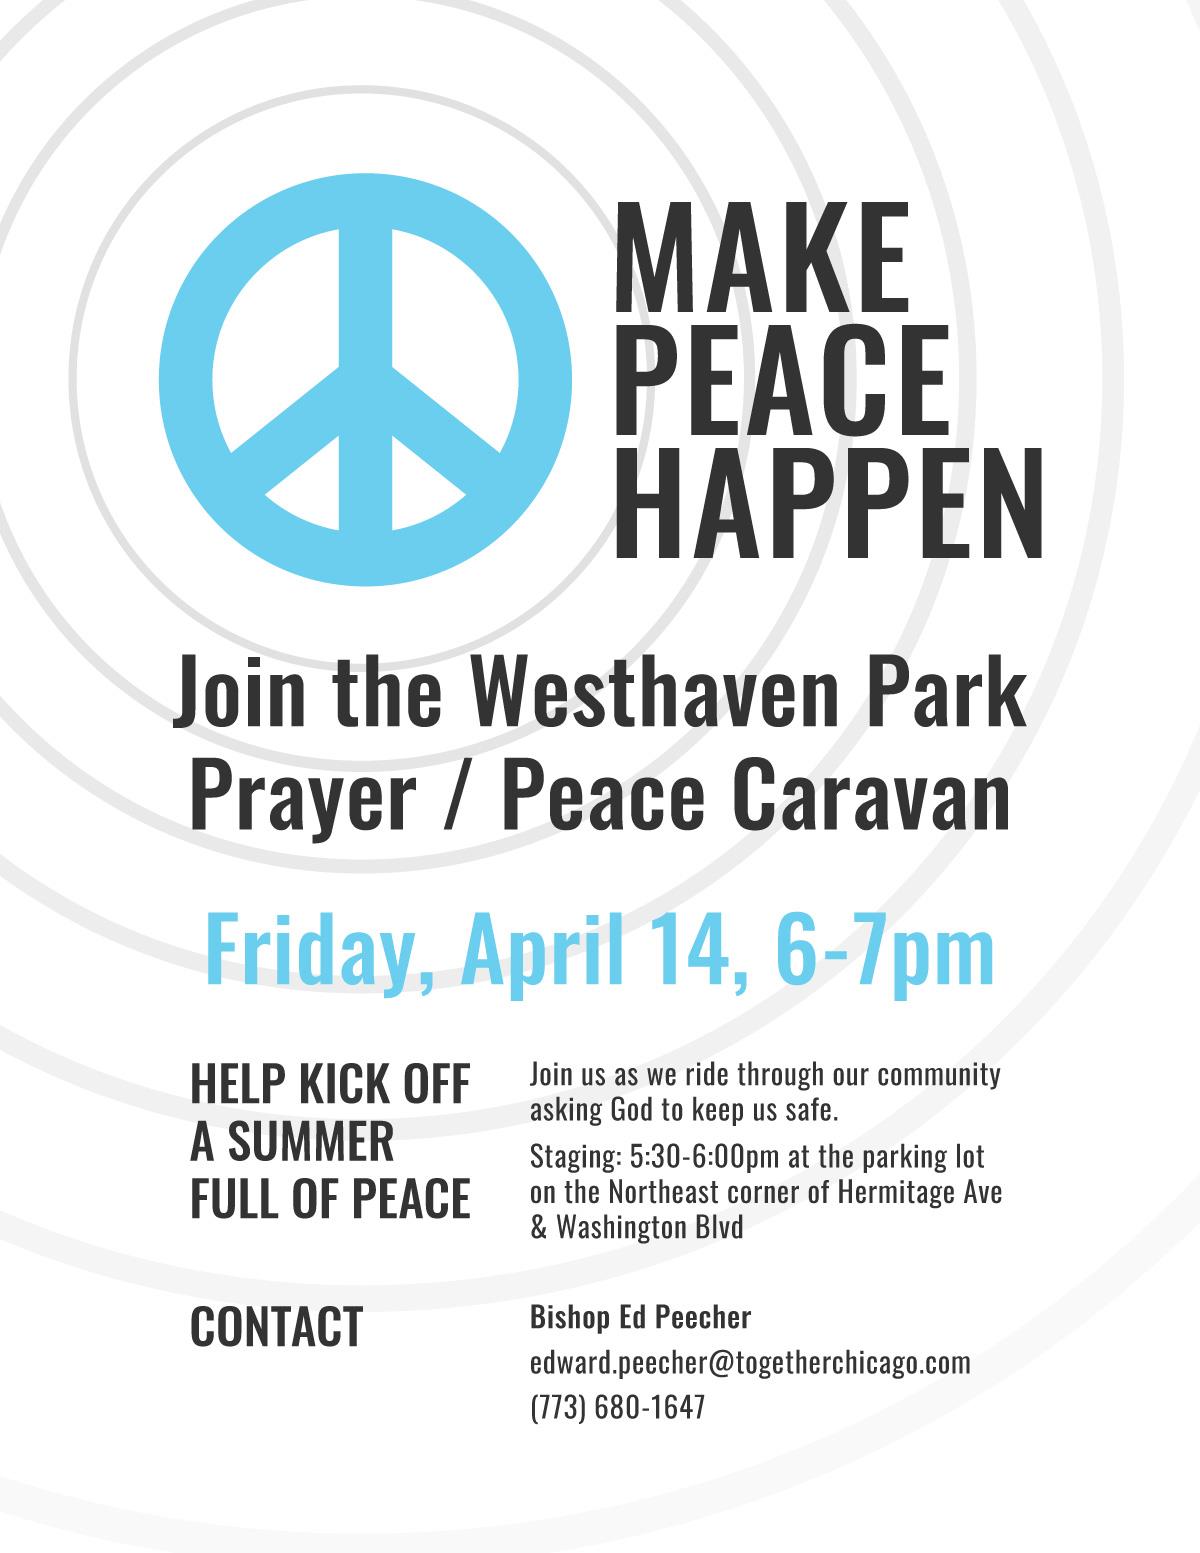 Westhaven Park Prayer / Peace Caravan